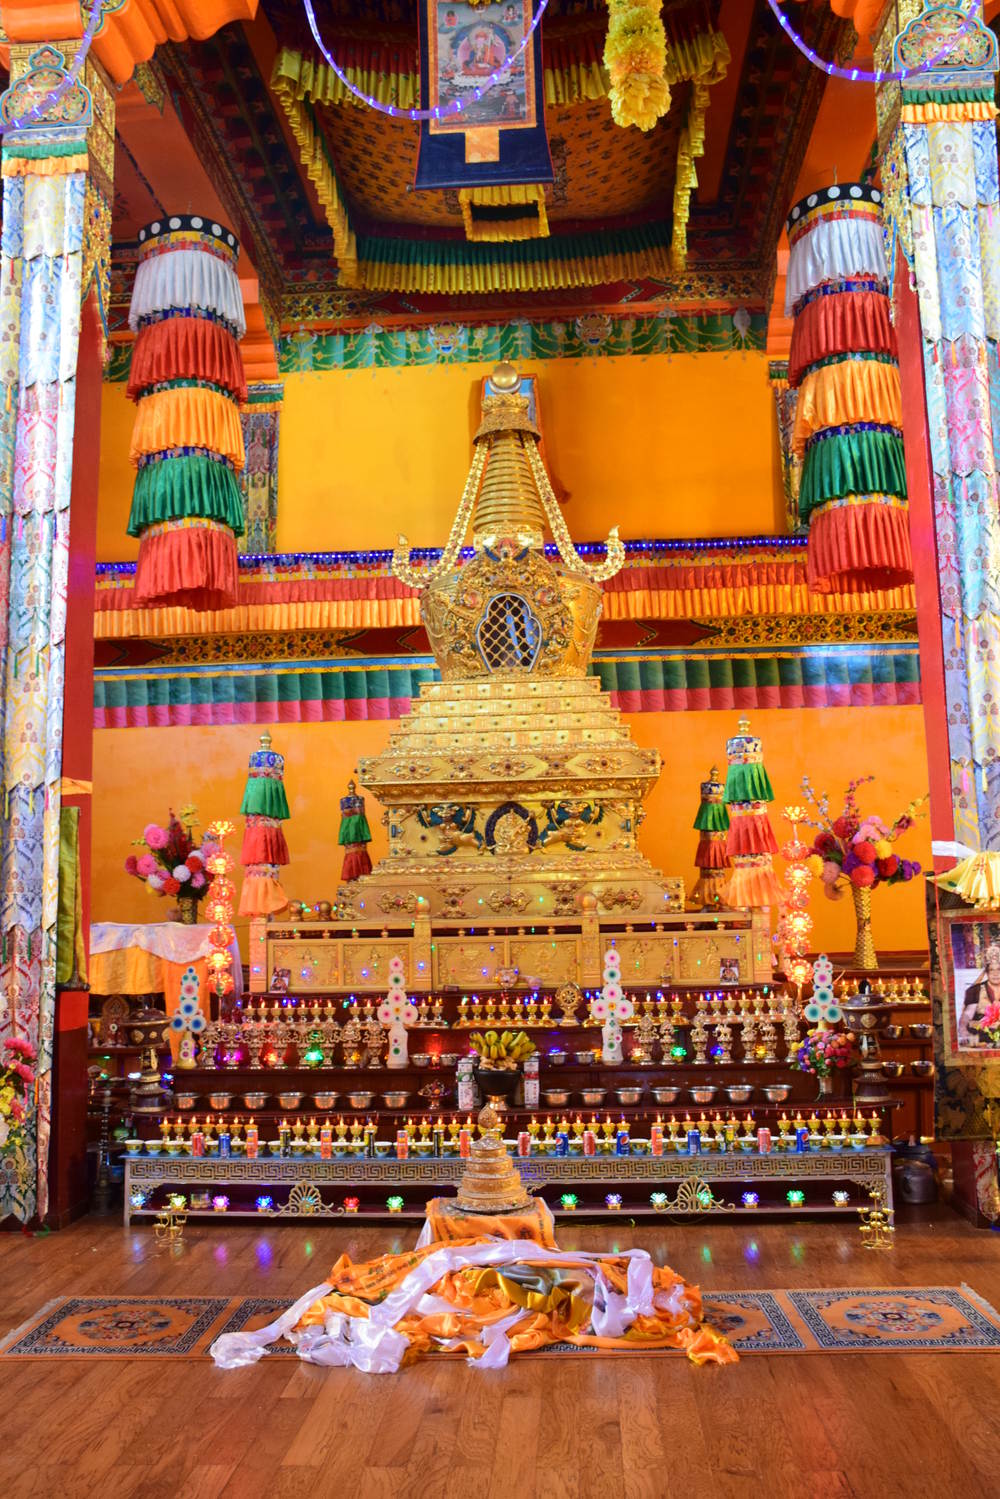 ступа с реликвиями Пенора Ринпоче, тибетская традиция Ньгма